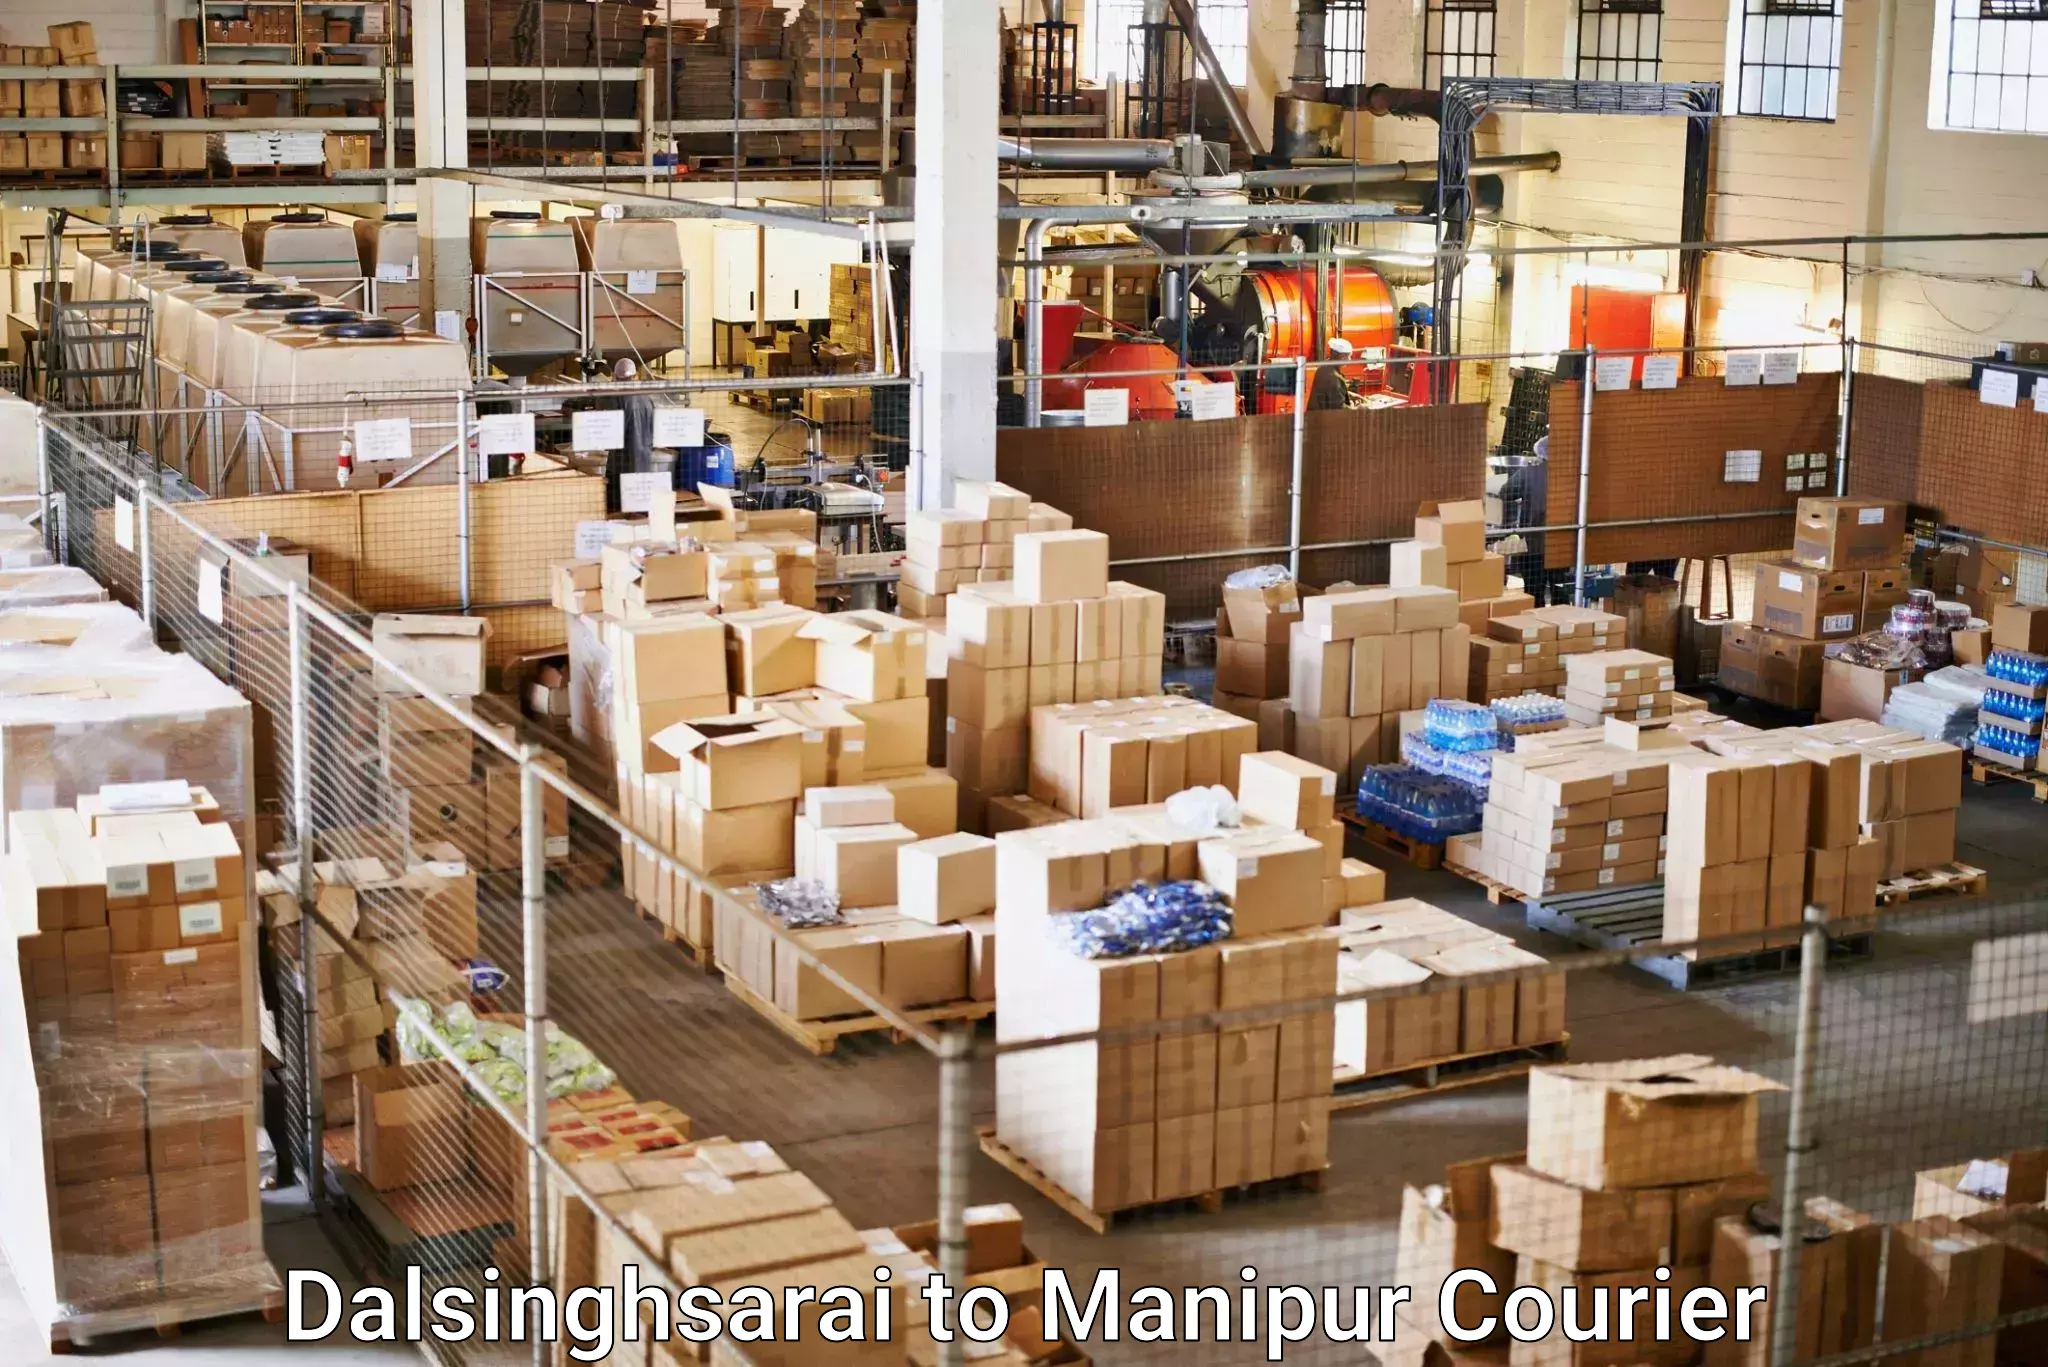 Door-to-door shipping in Dalsinghsarai to Chandel